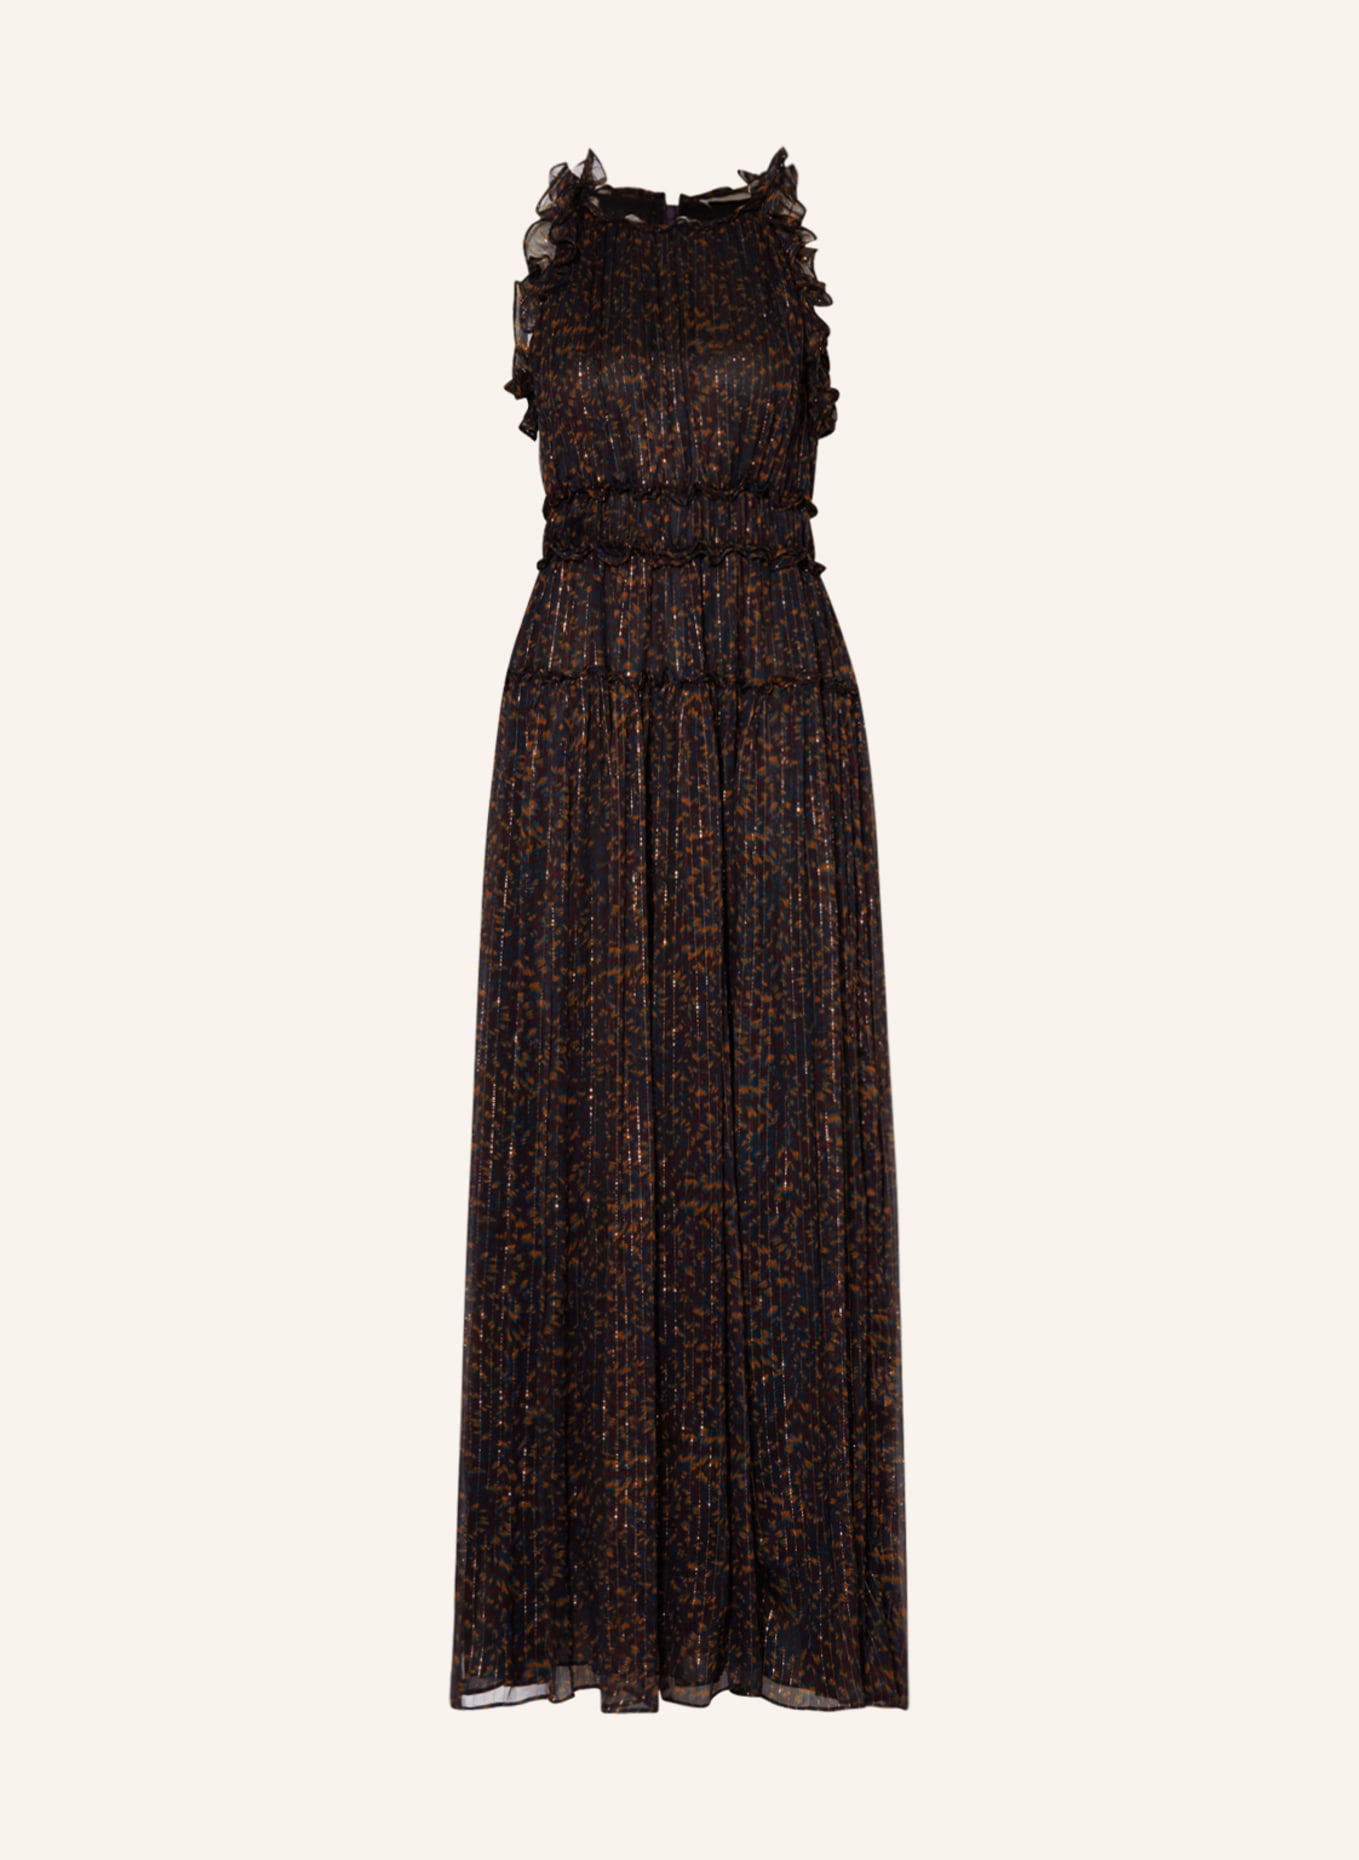 ULLA JOHNSON Kleid LIRRA mit Glitzergarn und Rüschen, Farbe: SCHWARZ/ DUNKELBLAU/ DUNKELORANGE (Bild 1)